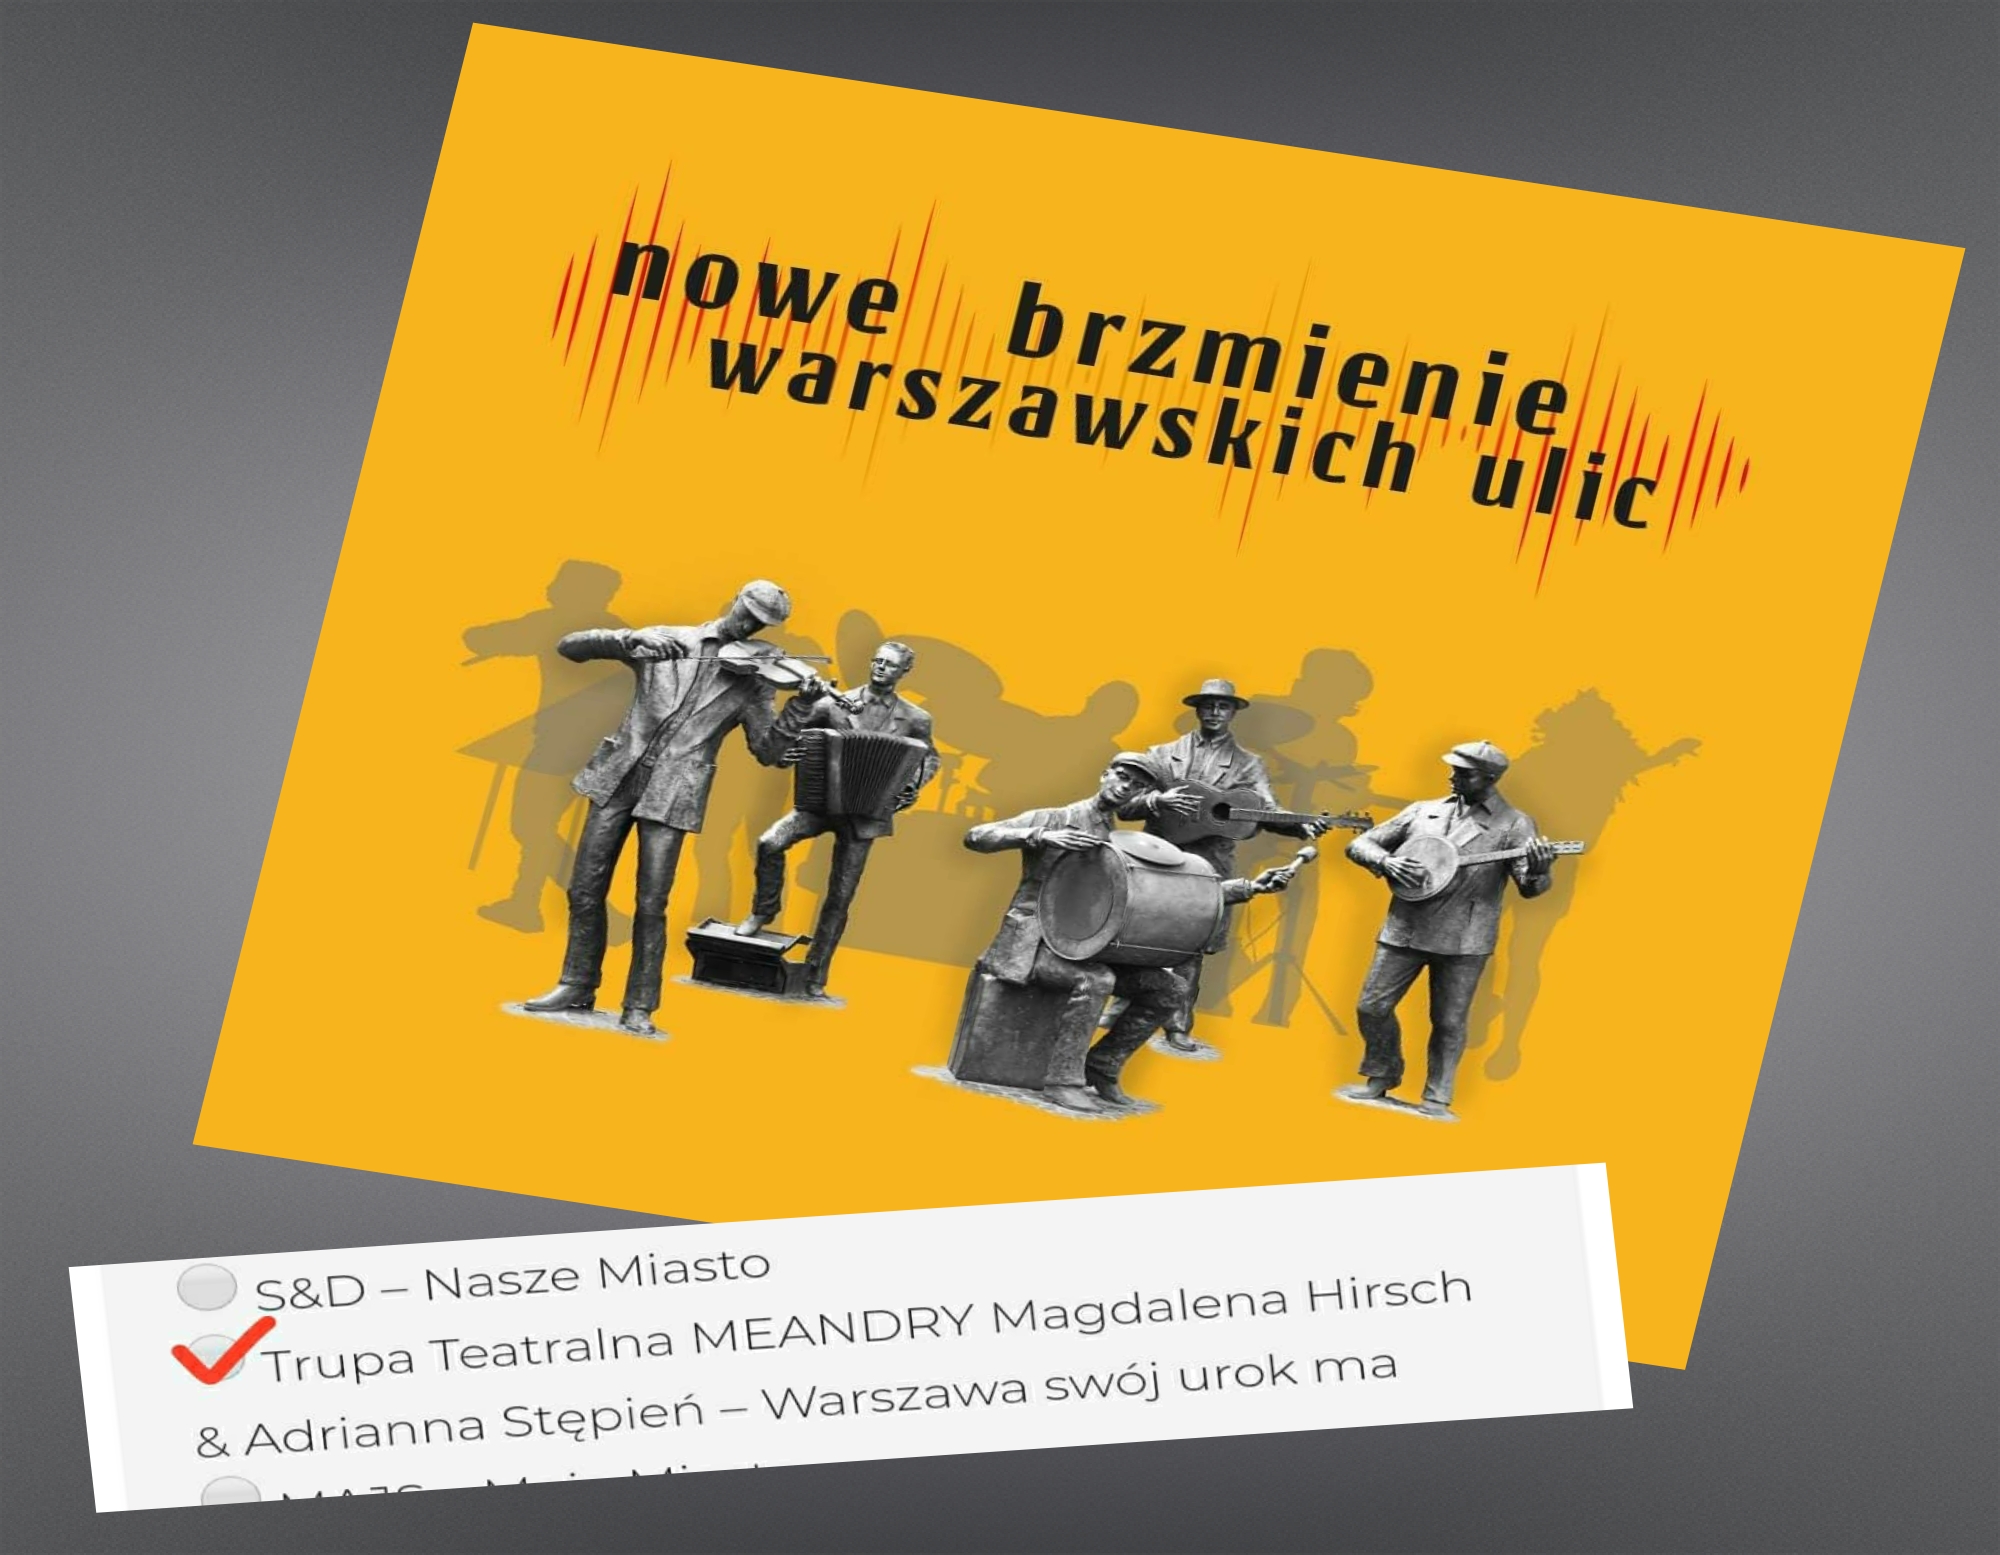 Plakat reklamujący konkurs "Nowe brzmienie warszawskich ulic"